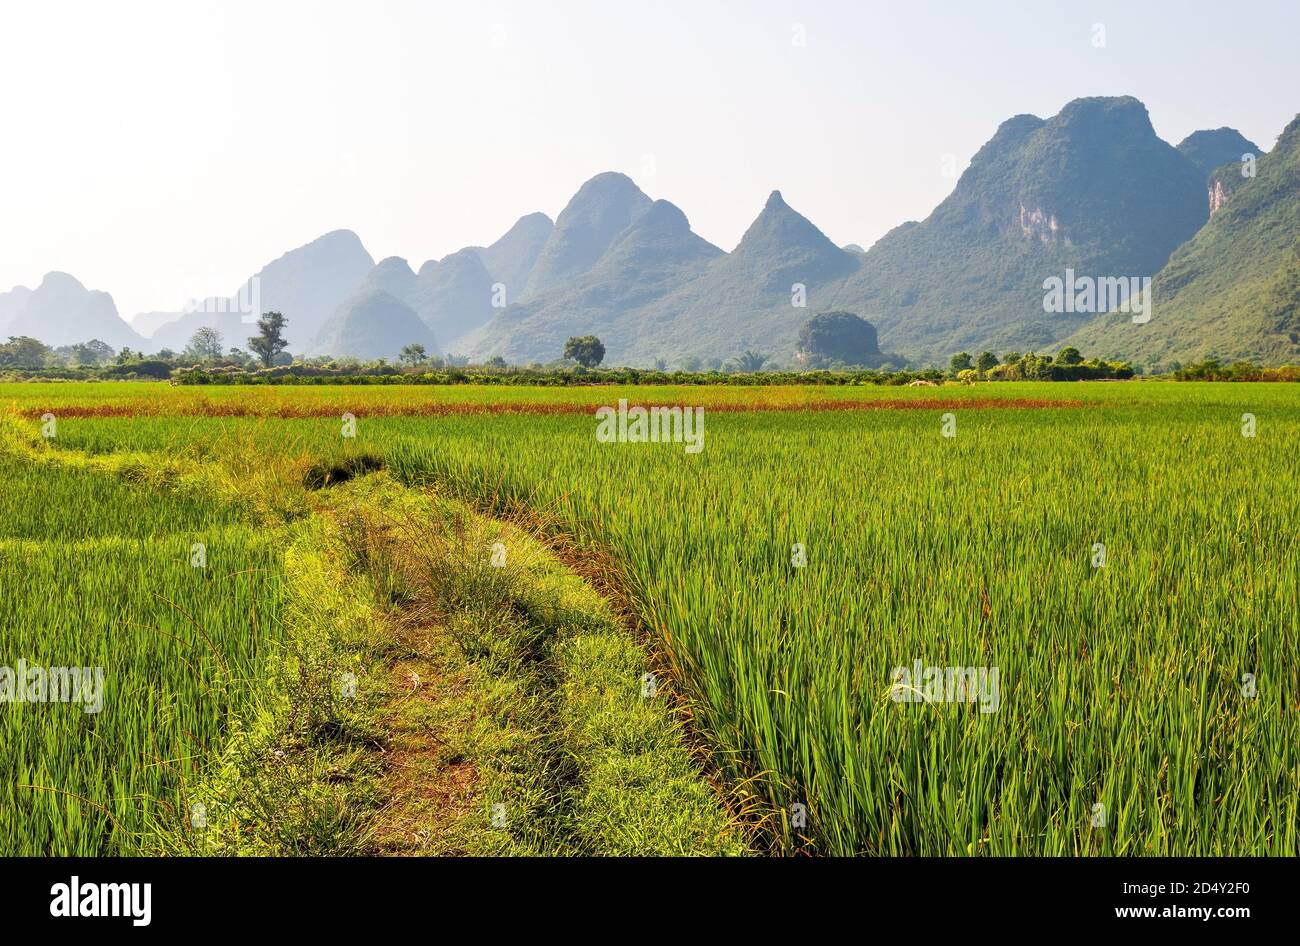 Risaia paesaggio con formazioni rocciose geologiche carsiche, Yangshuo, provincia di Guangxi, Cina. Foto Stock